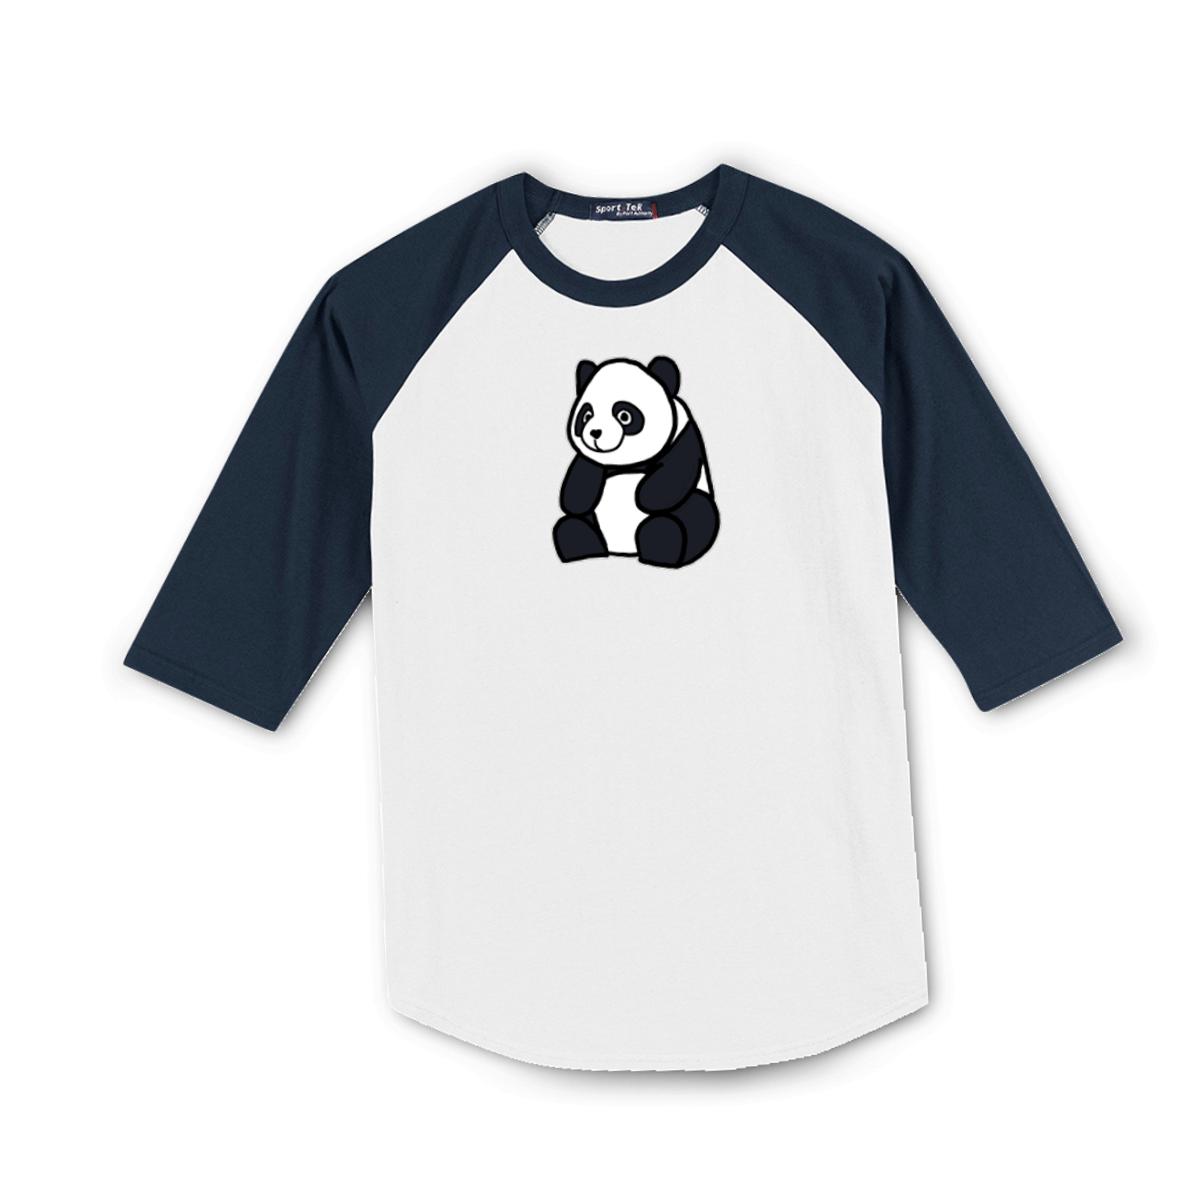 Panda Men's Raglan Tee Small white-navy